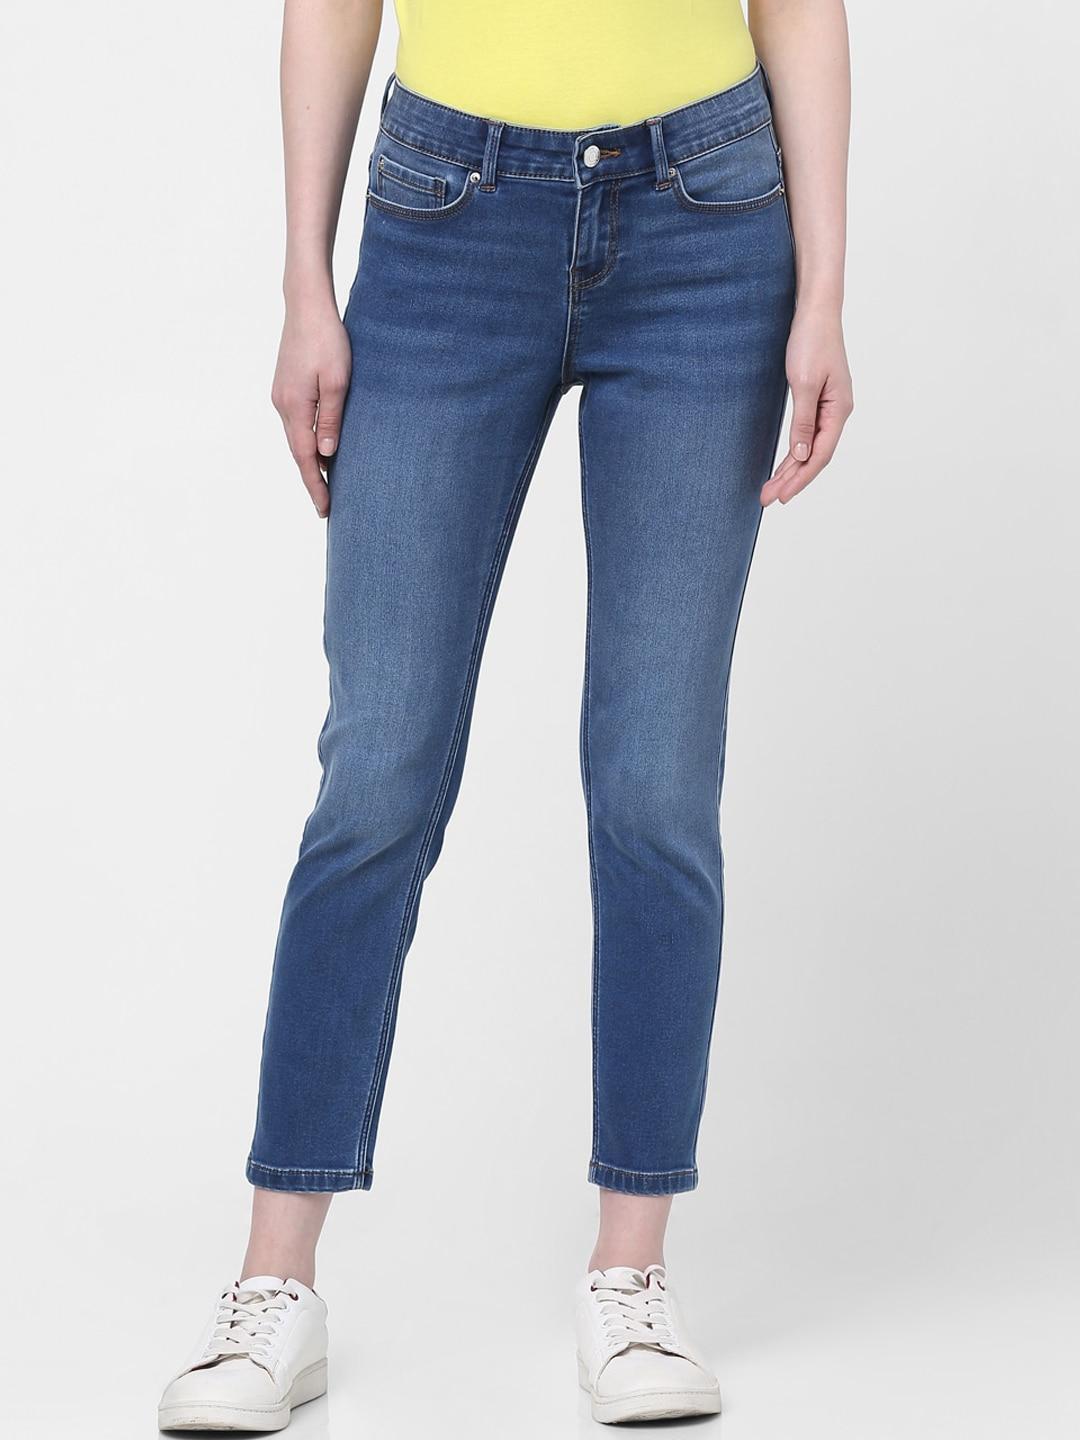 Vero Moda Women Blue Skinny Fit Light Fade Jeans